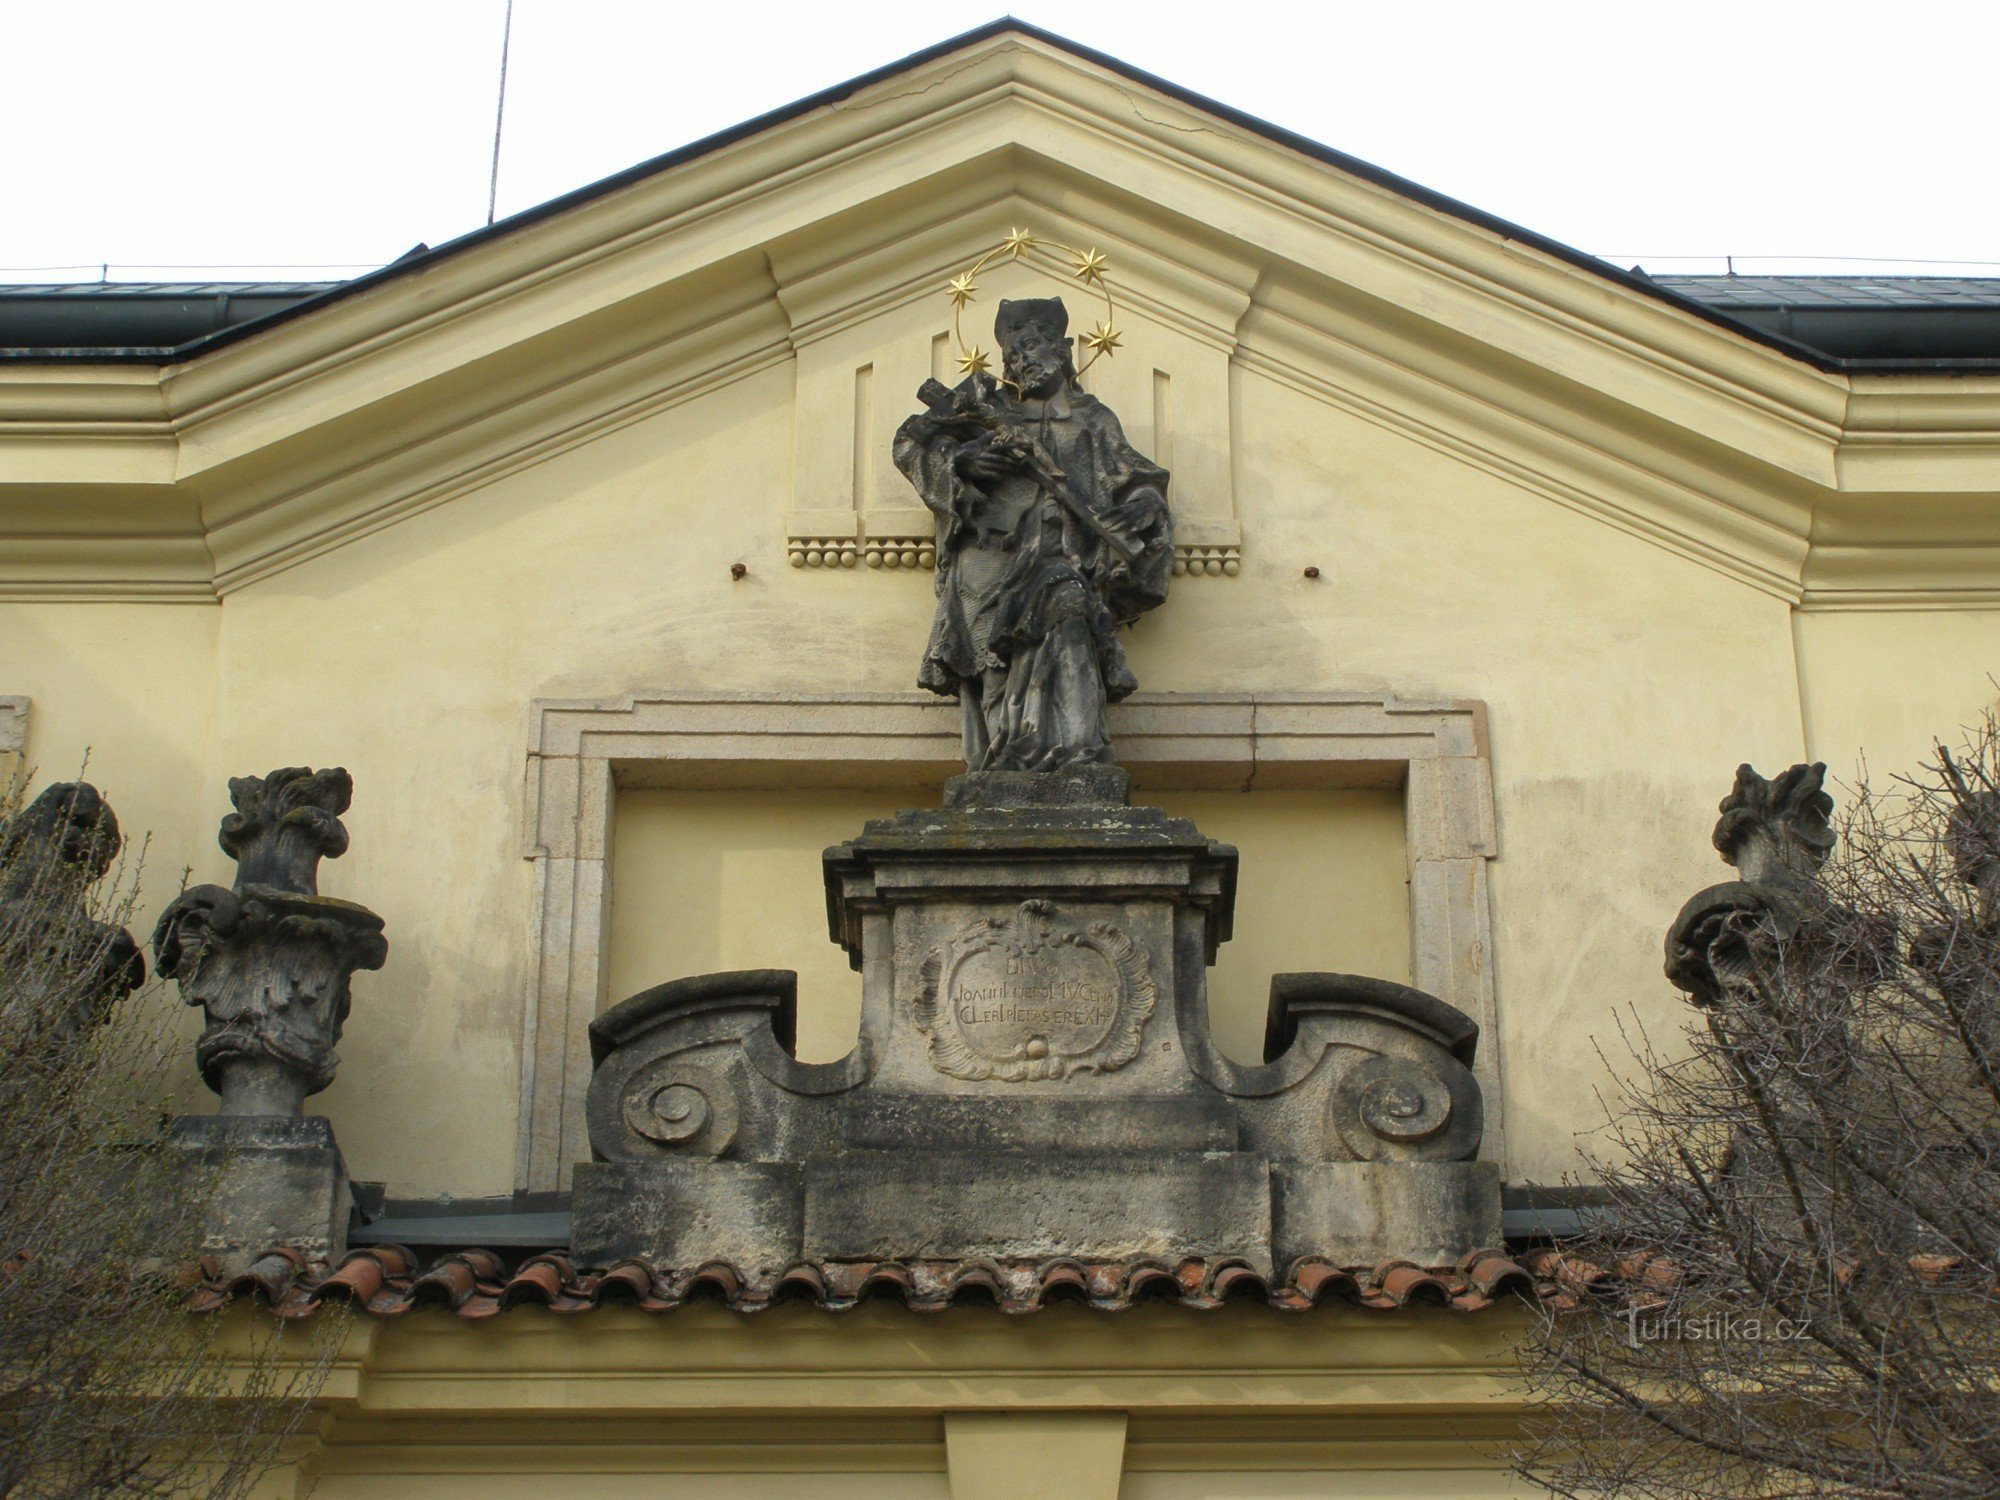 Hradec Králové – Városi Zeneház